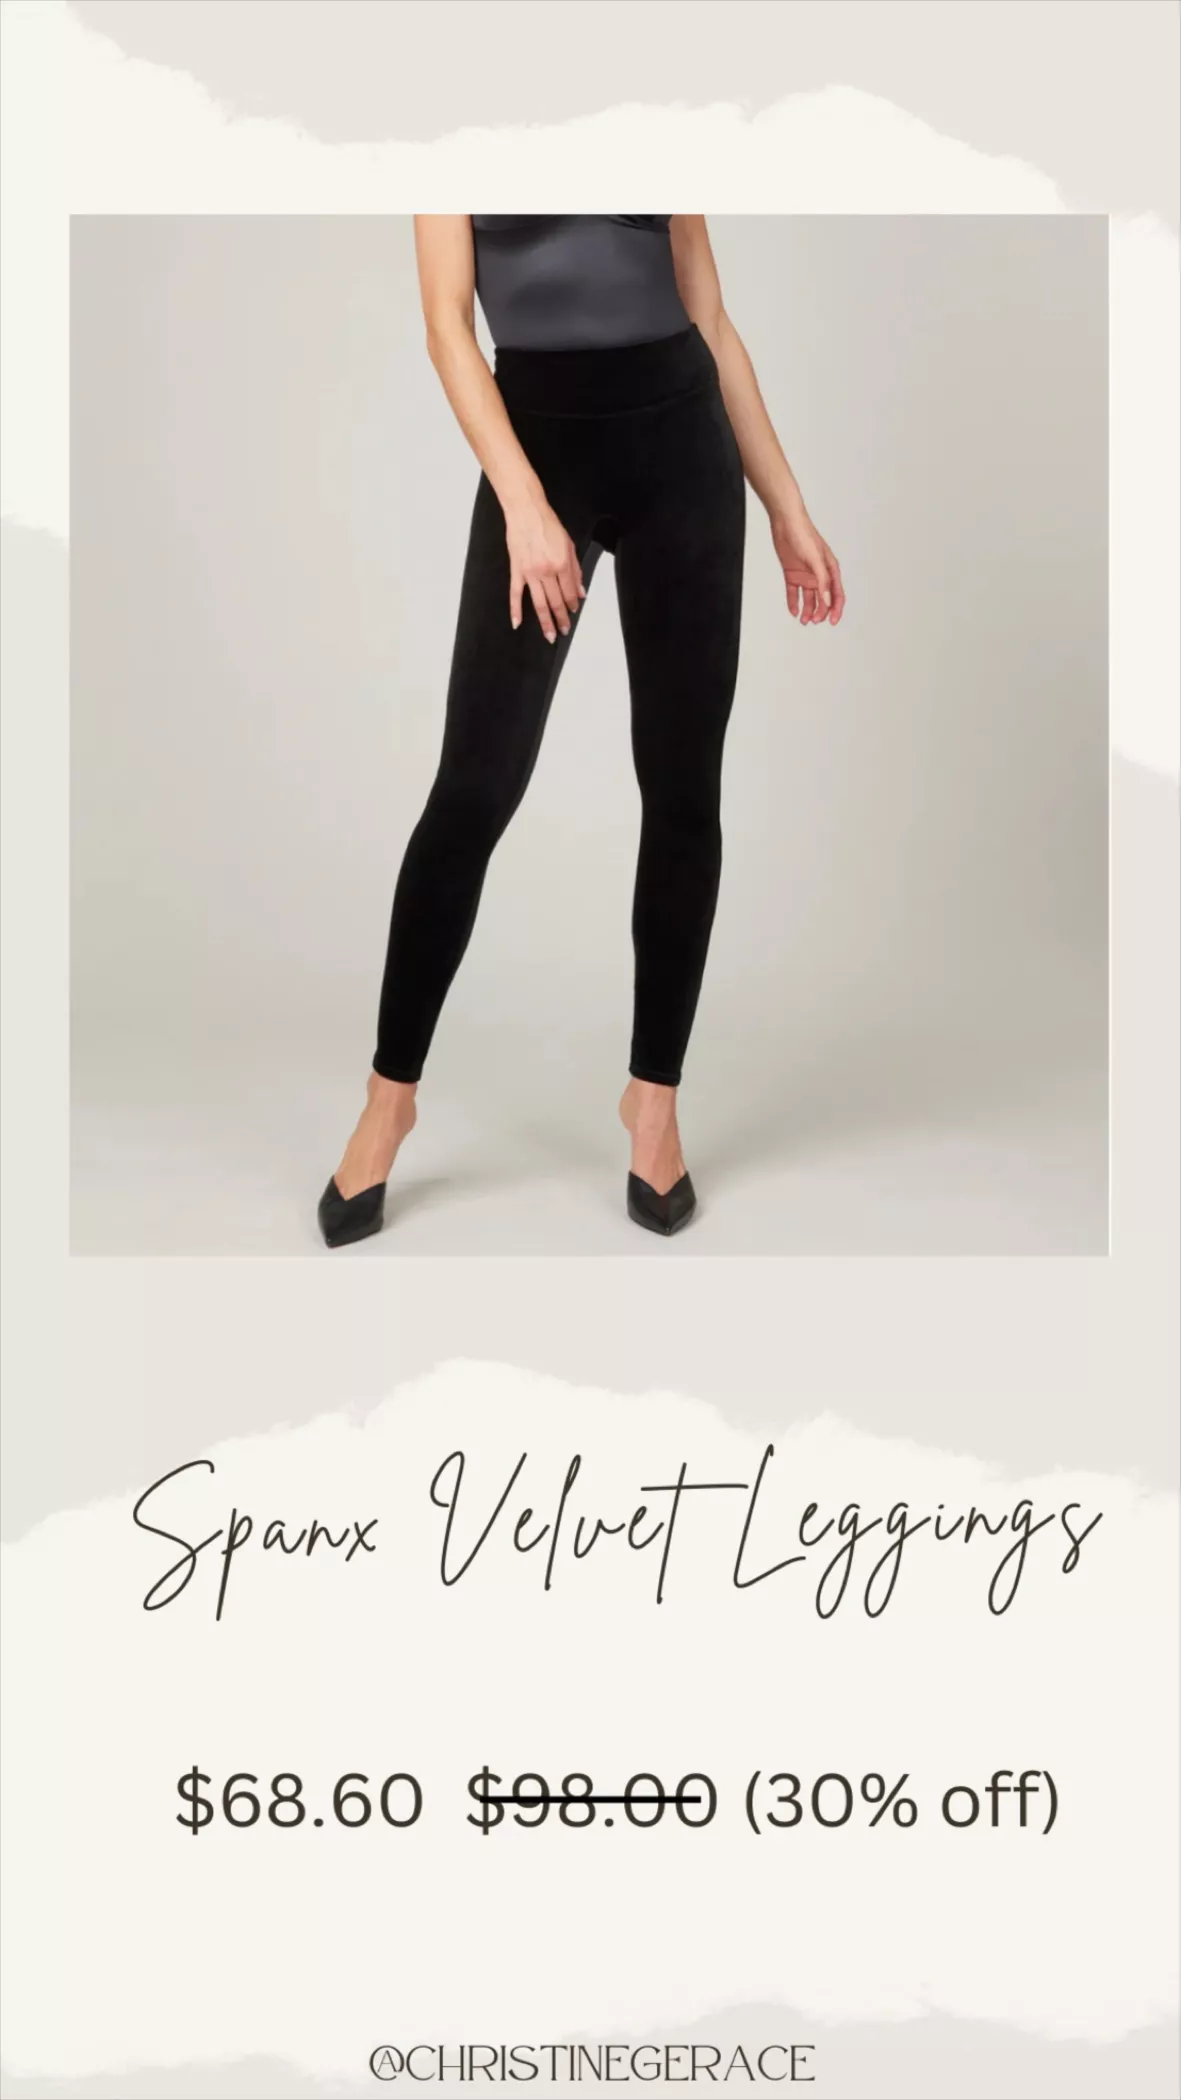 Velvet Leggings curated on LTK